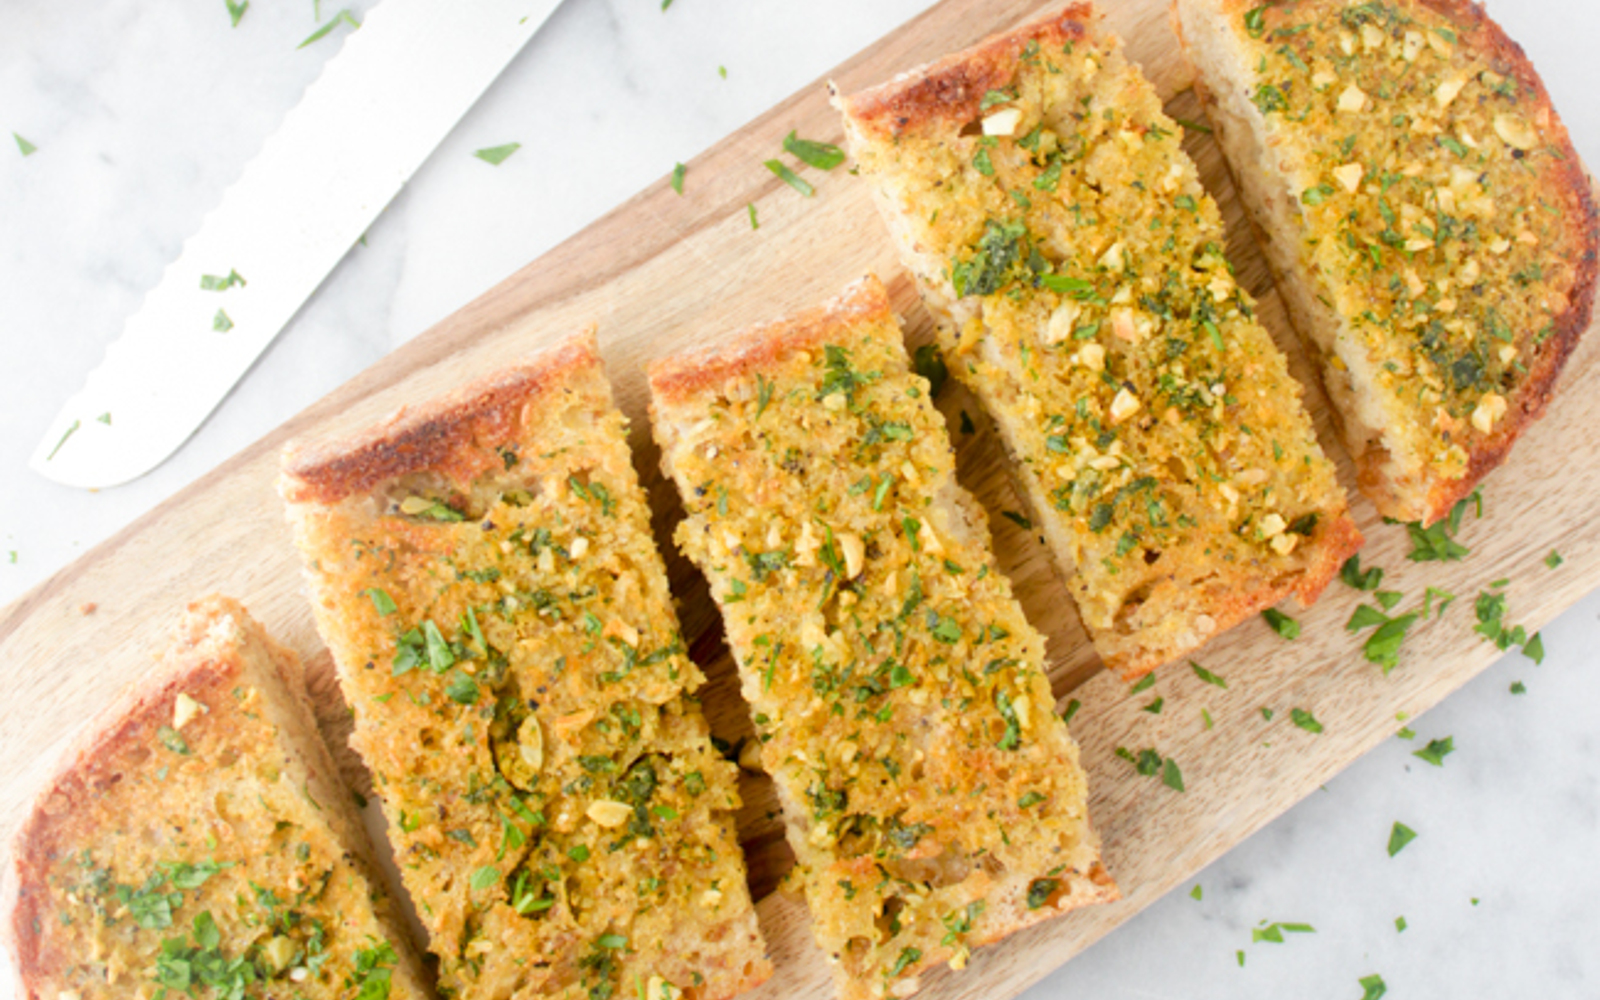 Vegna GLuten-Free Cheesy 4-Ingredient Garlic Bread with nutritional yeast